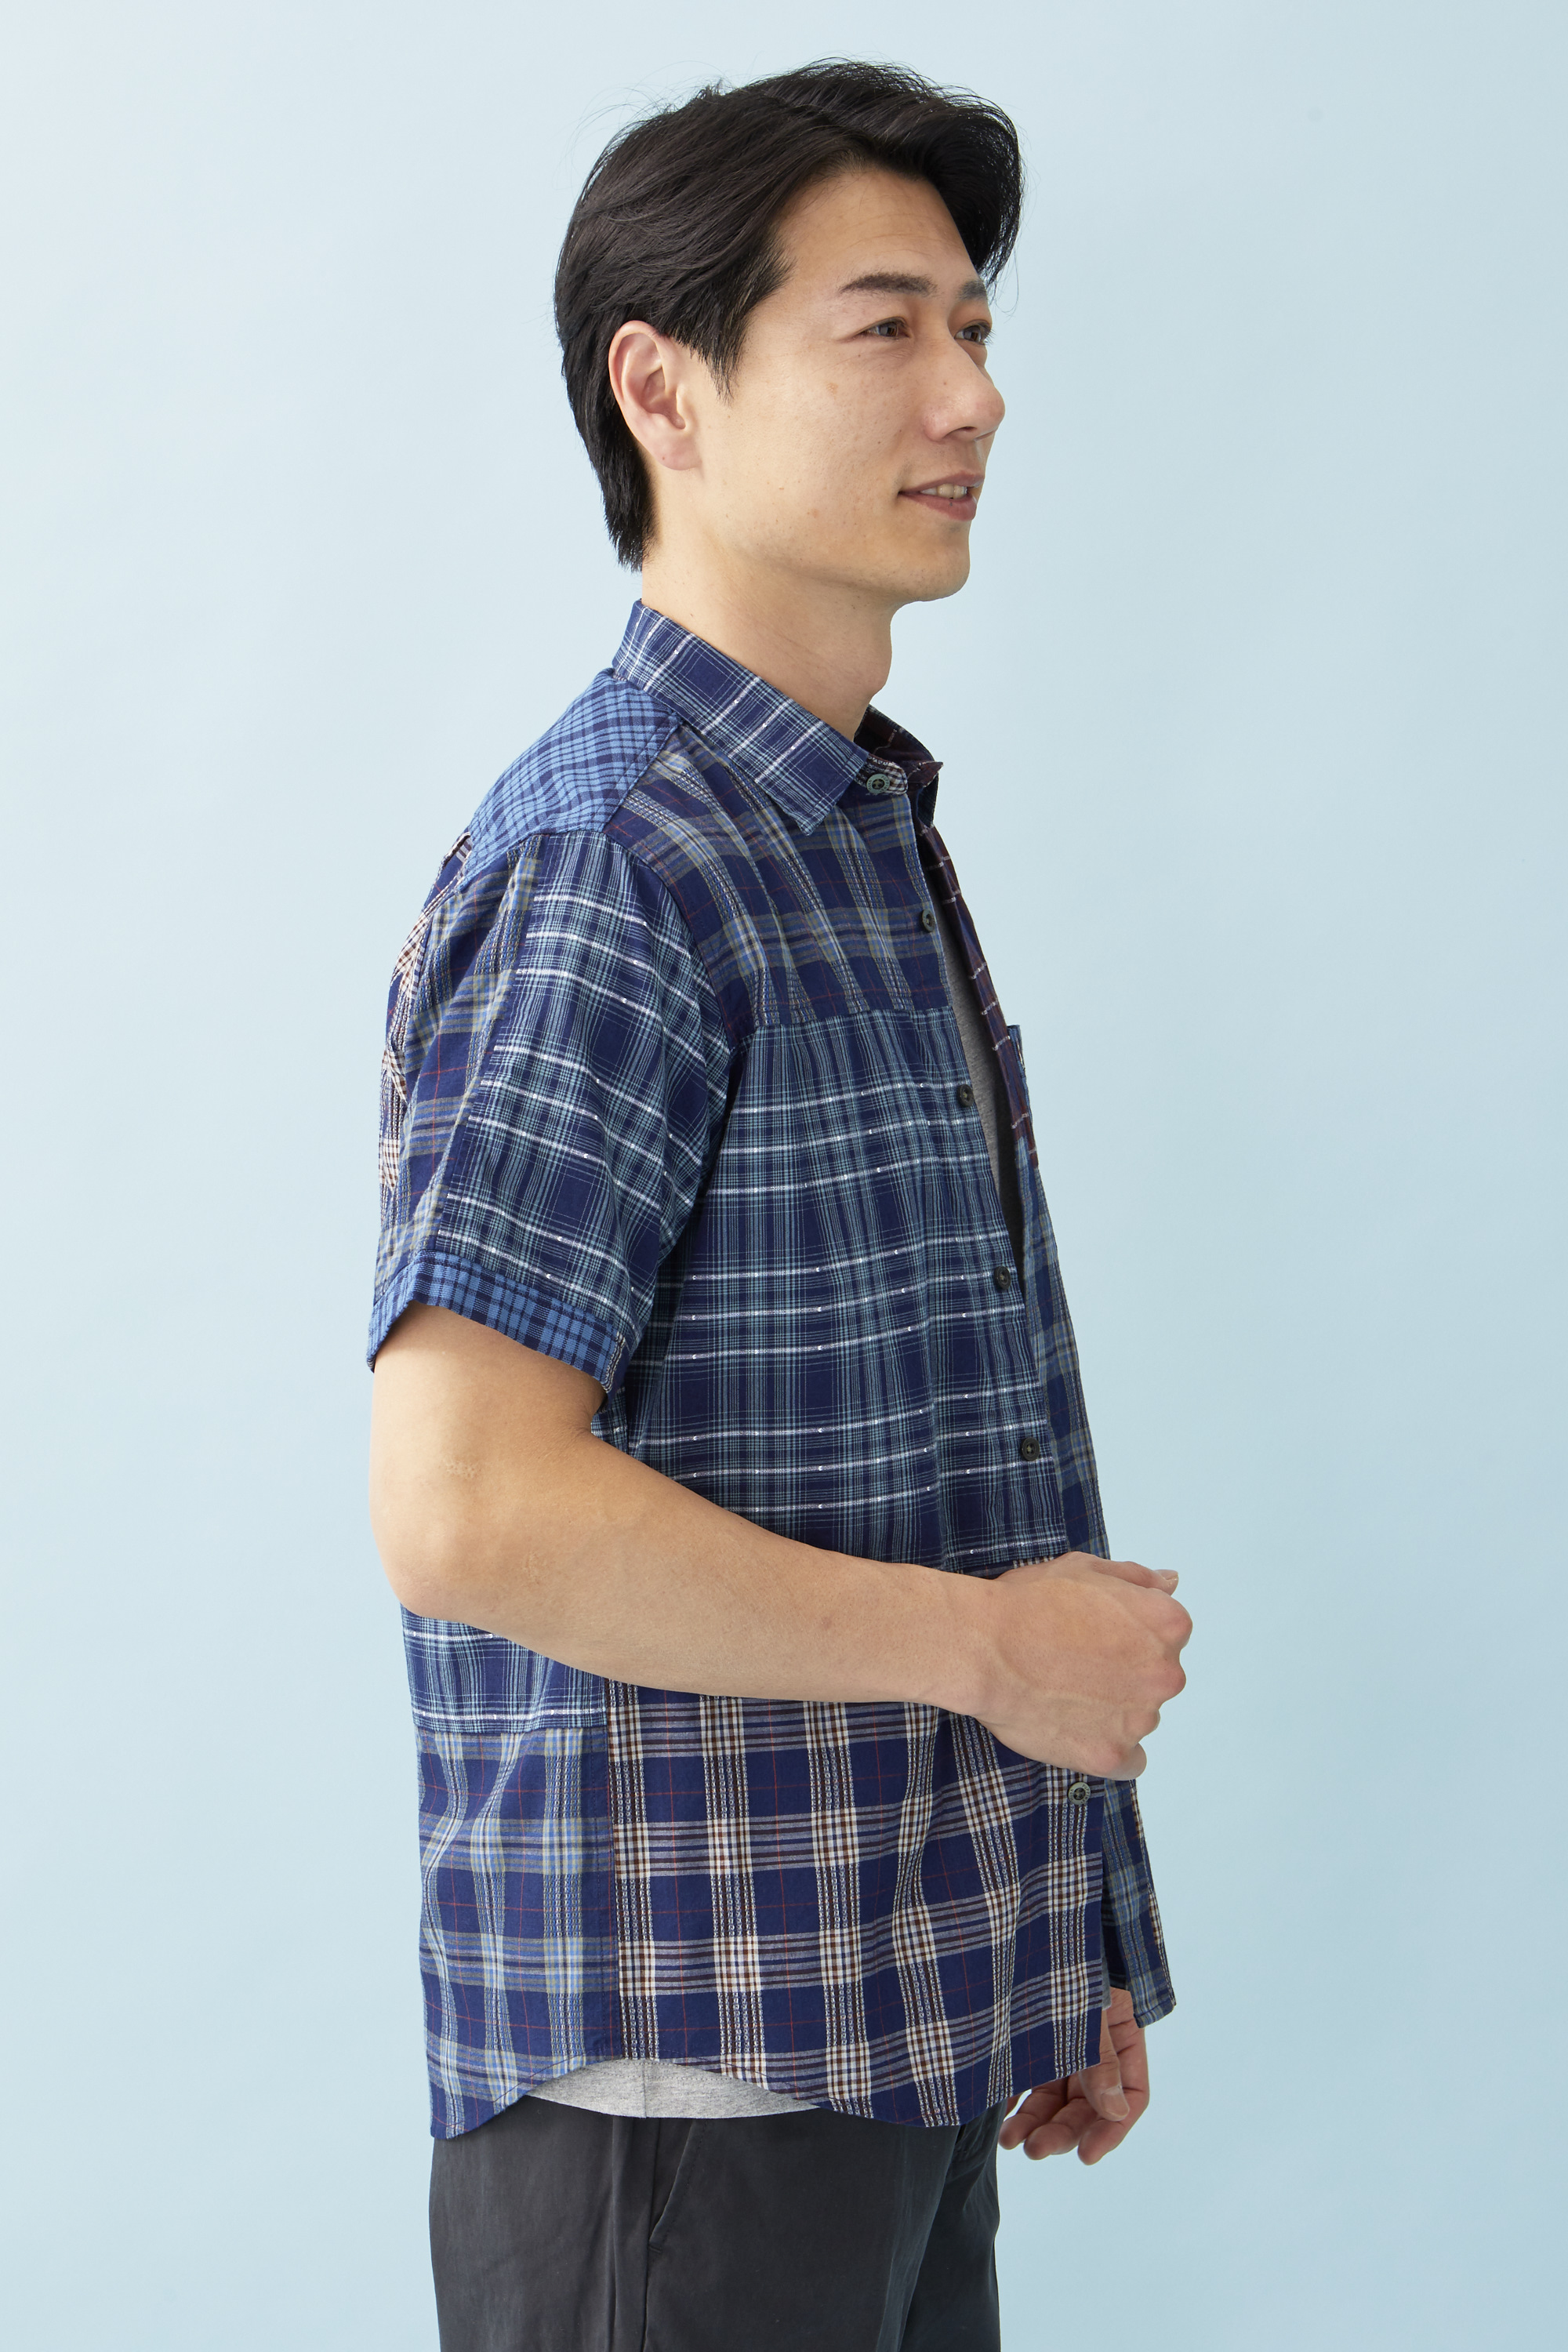 インディゴクレイジーチェックシャツ【キングサイズ】 - ハッシュパピーアパレル公式通販サイト